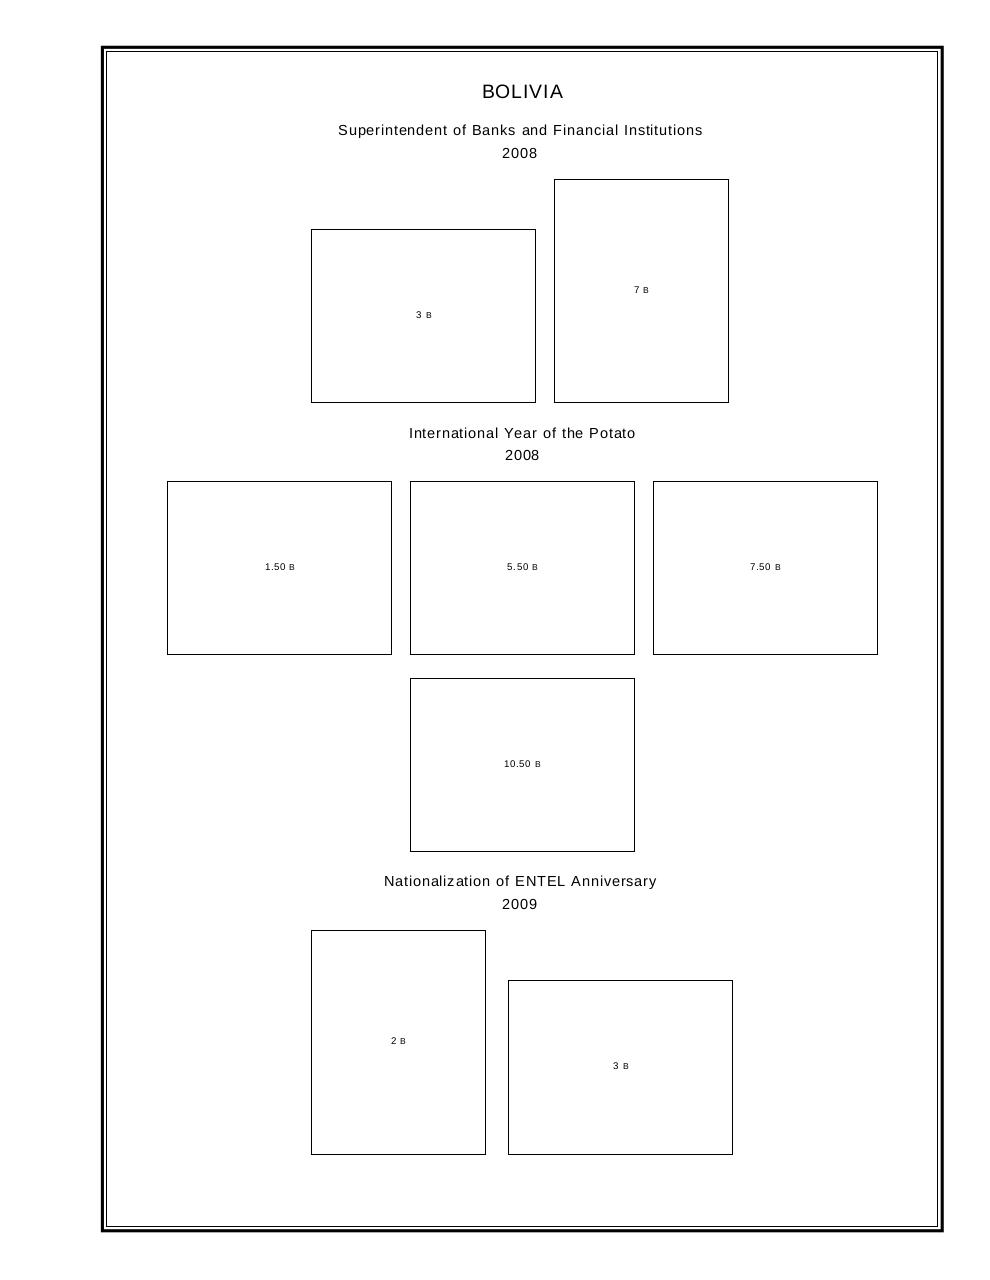 Vista previa del archivo PDF bolivia-2007-2009.pdf